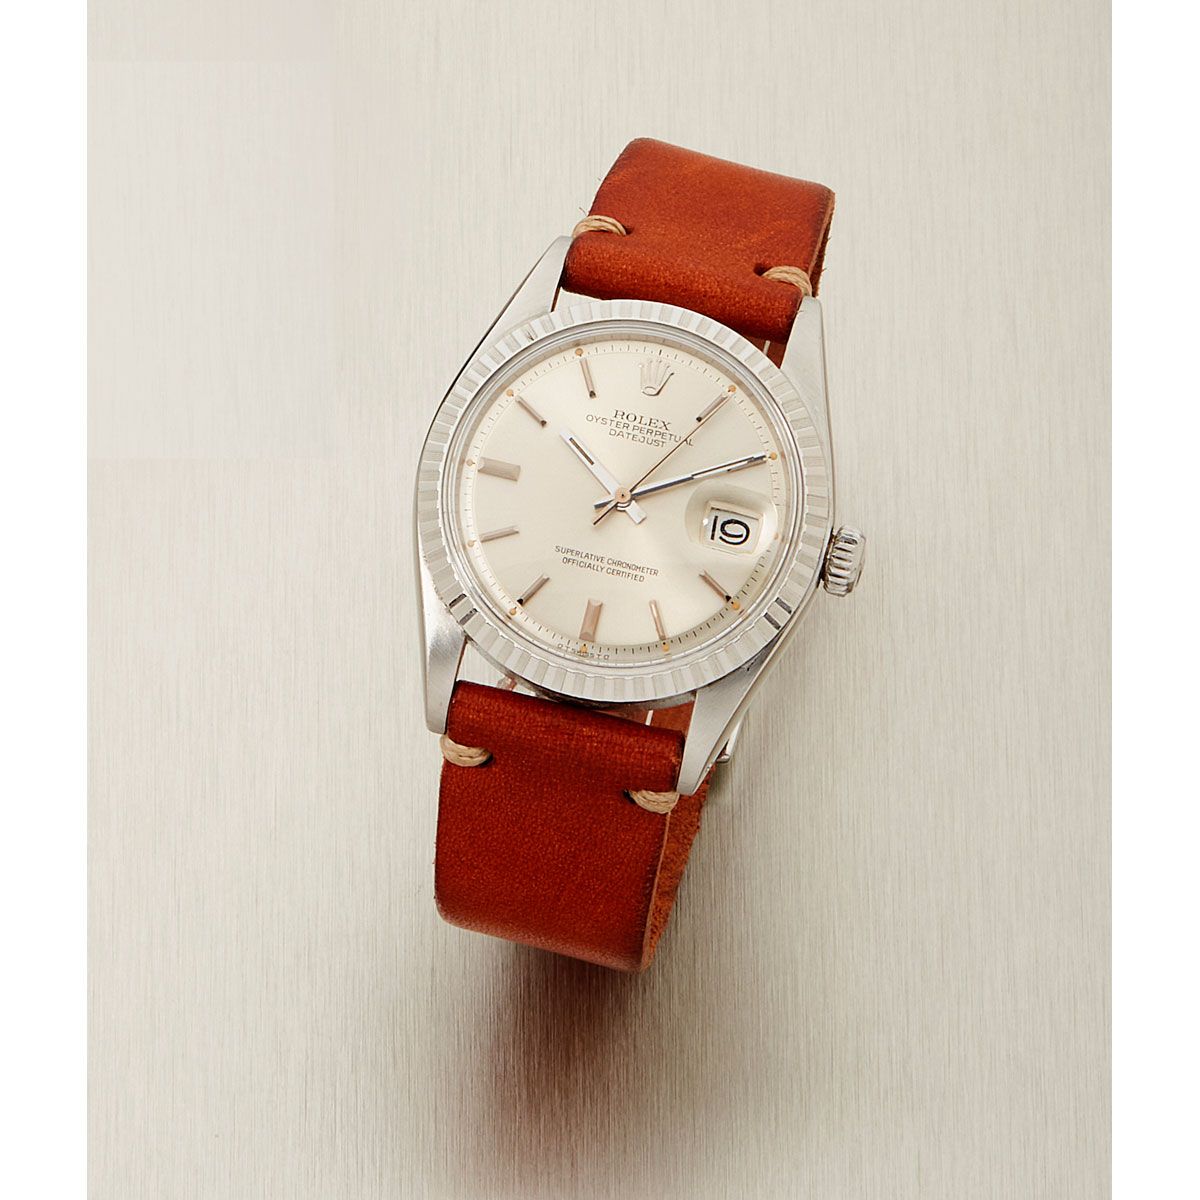 Null Rolex, Datejust, Réf. 1601, n° 3547xxx, vers 1973.

Une belle montre en aci&hellip;